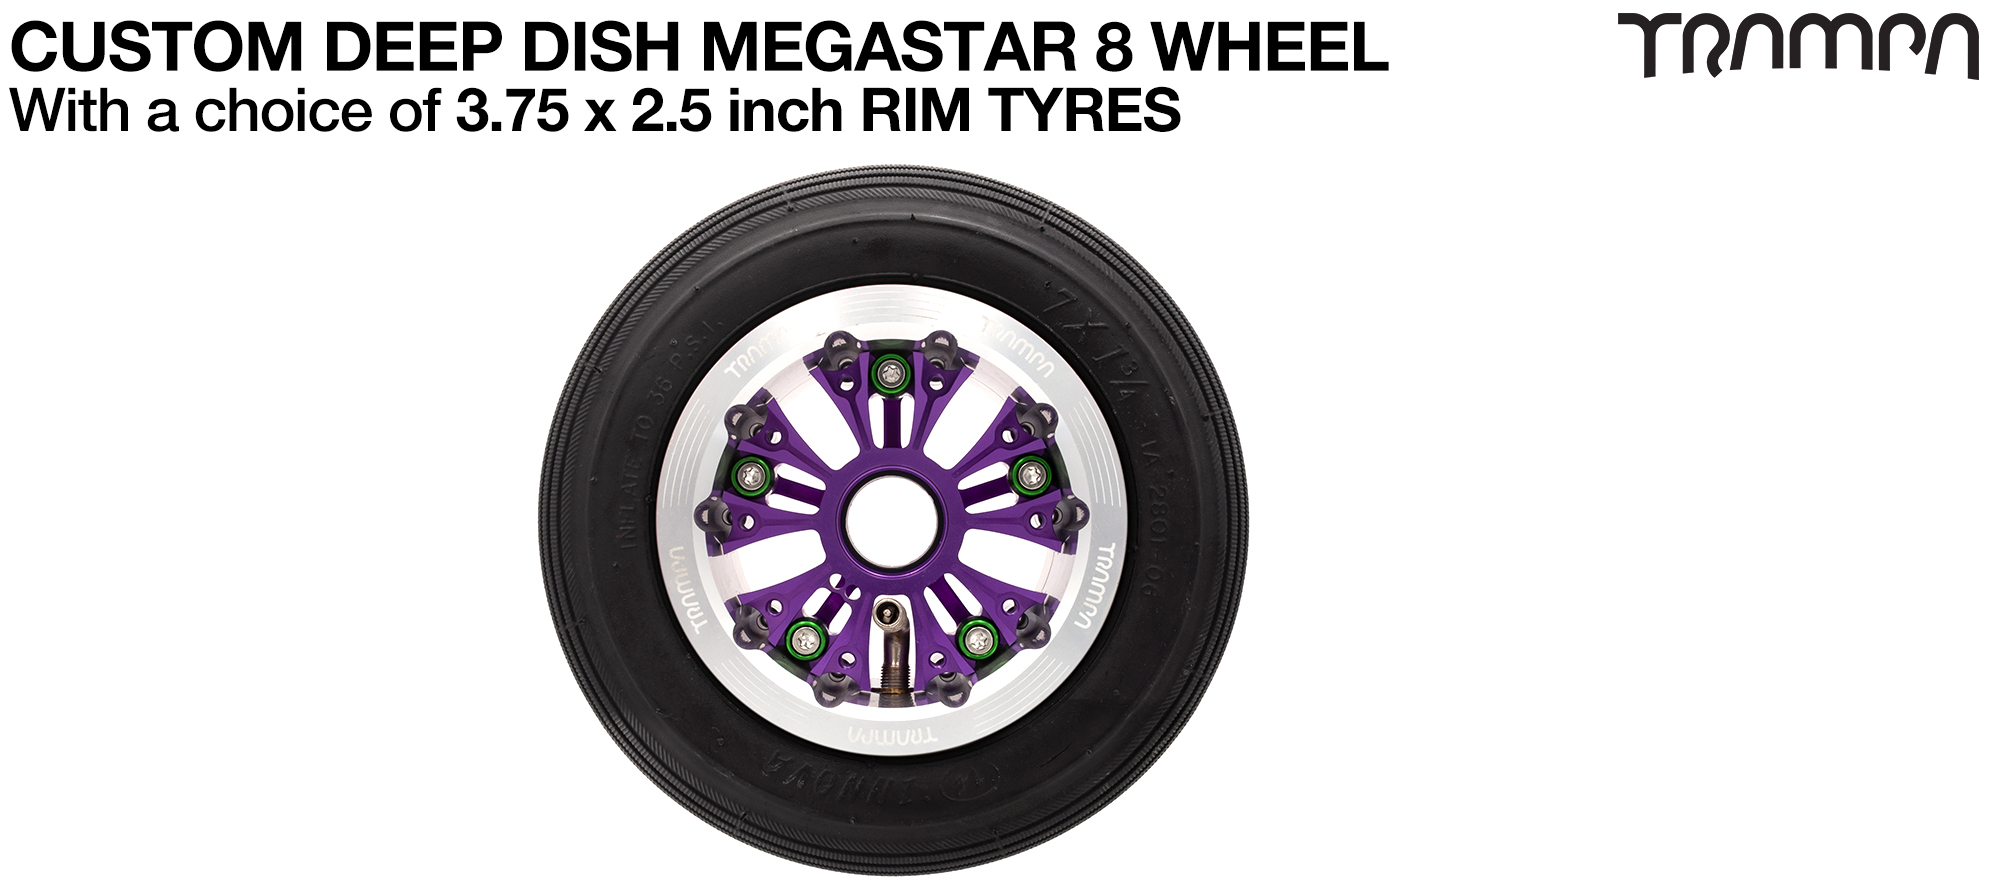 DEEP-DISH MEGASTAR 8 WHEEL - 7 Inch Tyres  (£80)